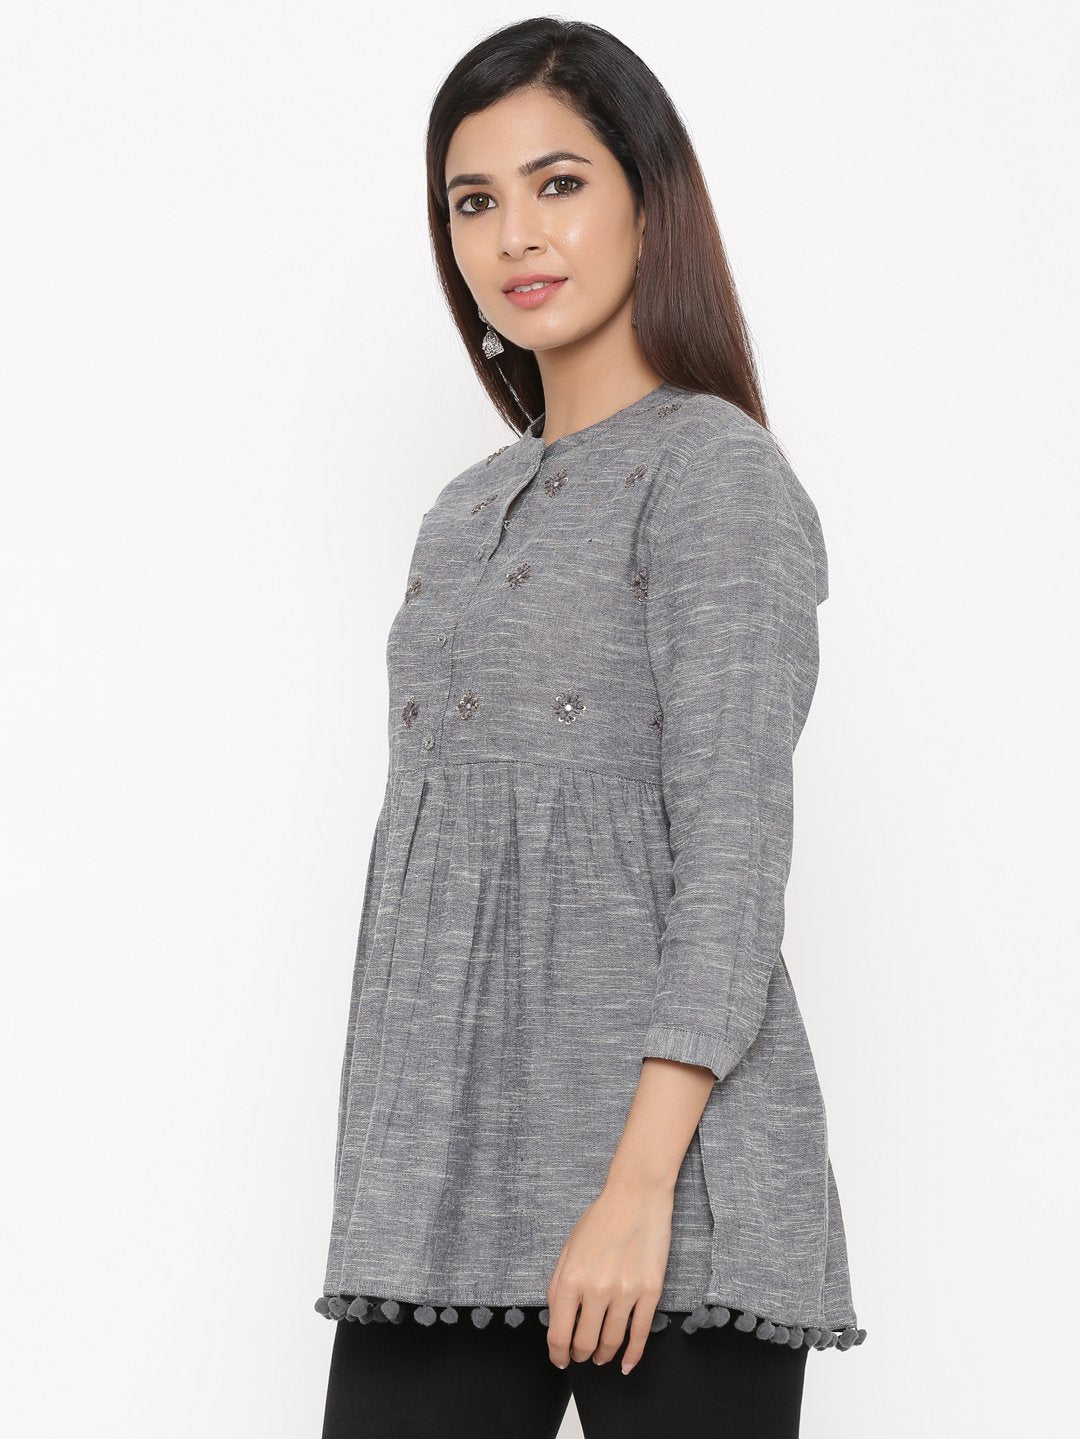 Women's Grey Cotton Tunic by Kipek (1pc)